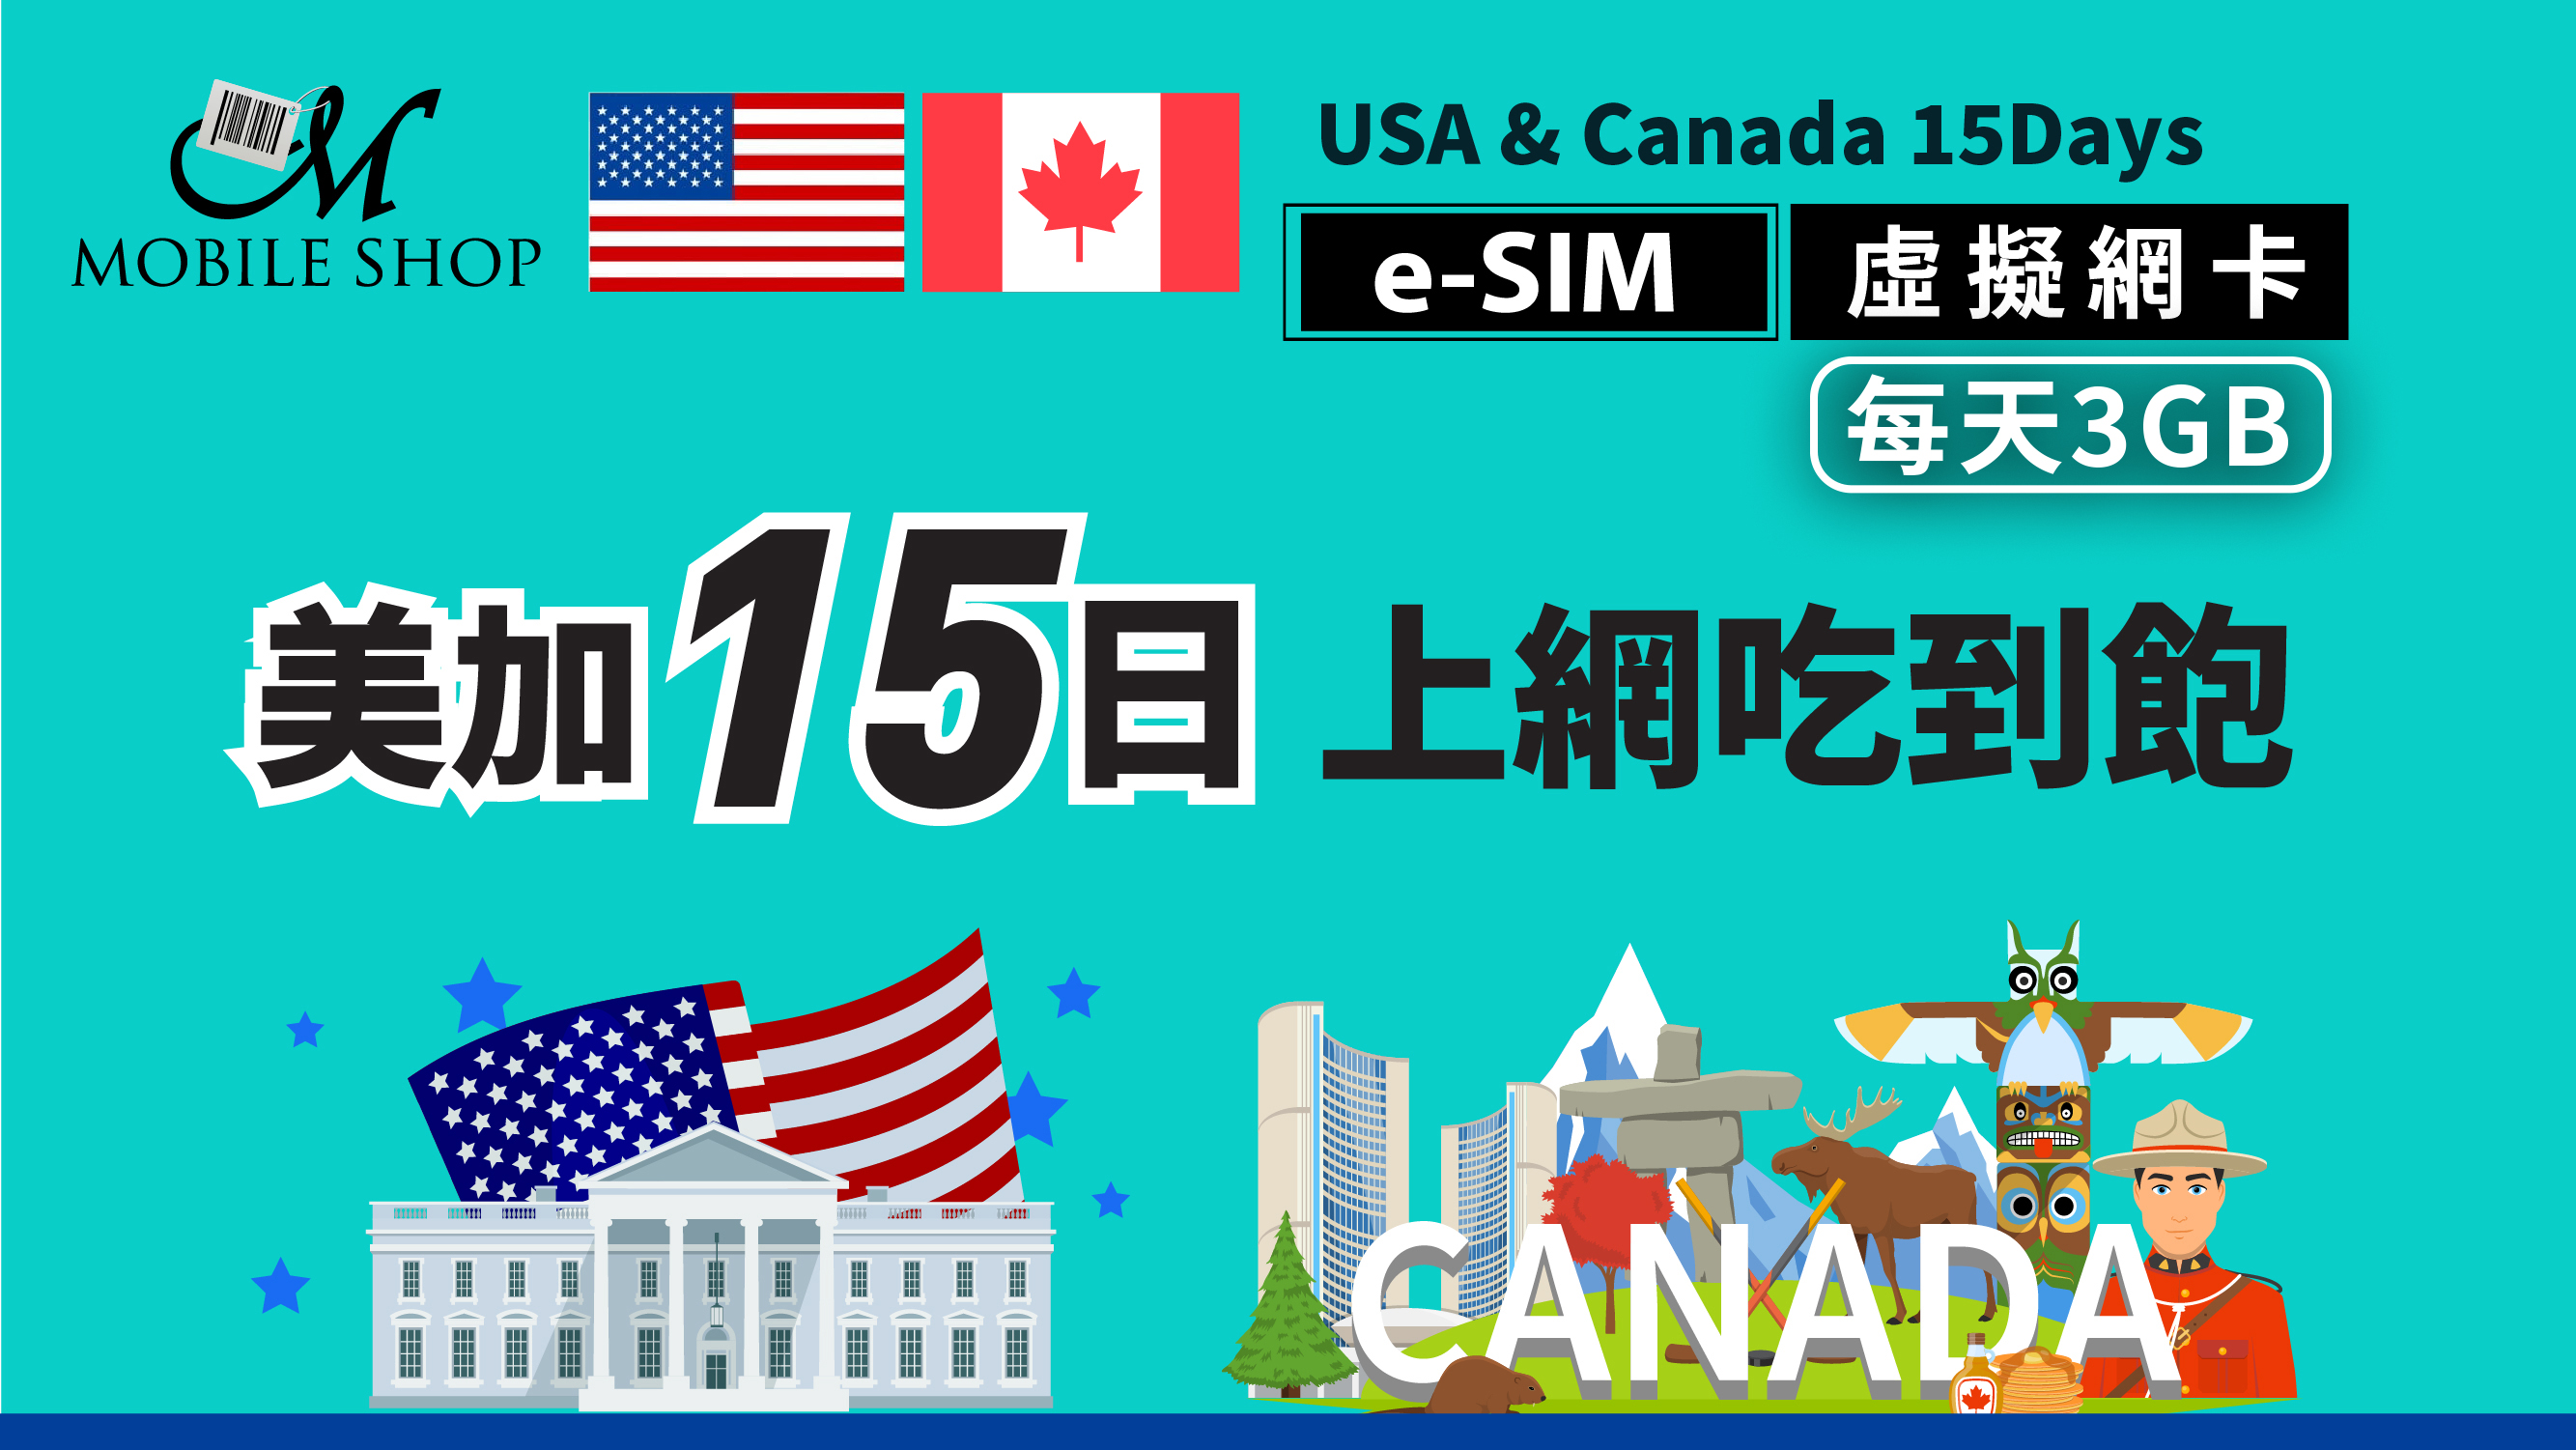 e-SIM_USA&Canada 15Days/3GB per day unlimited data